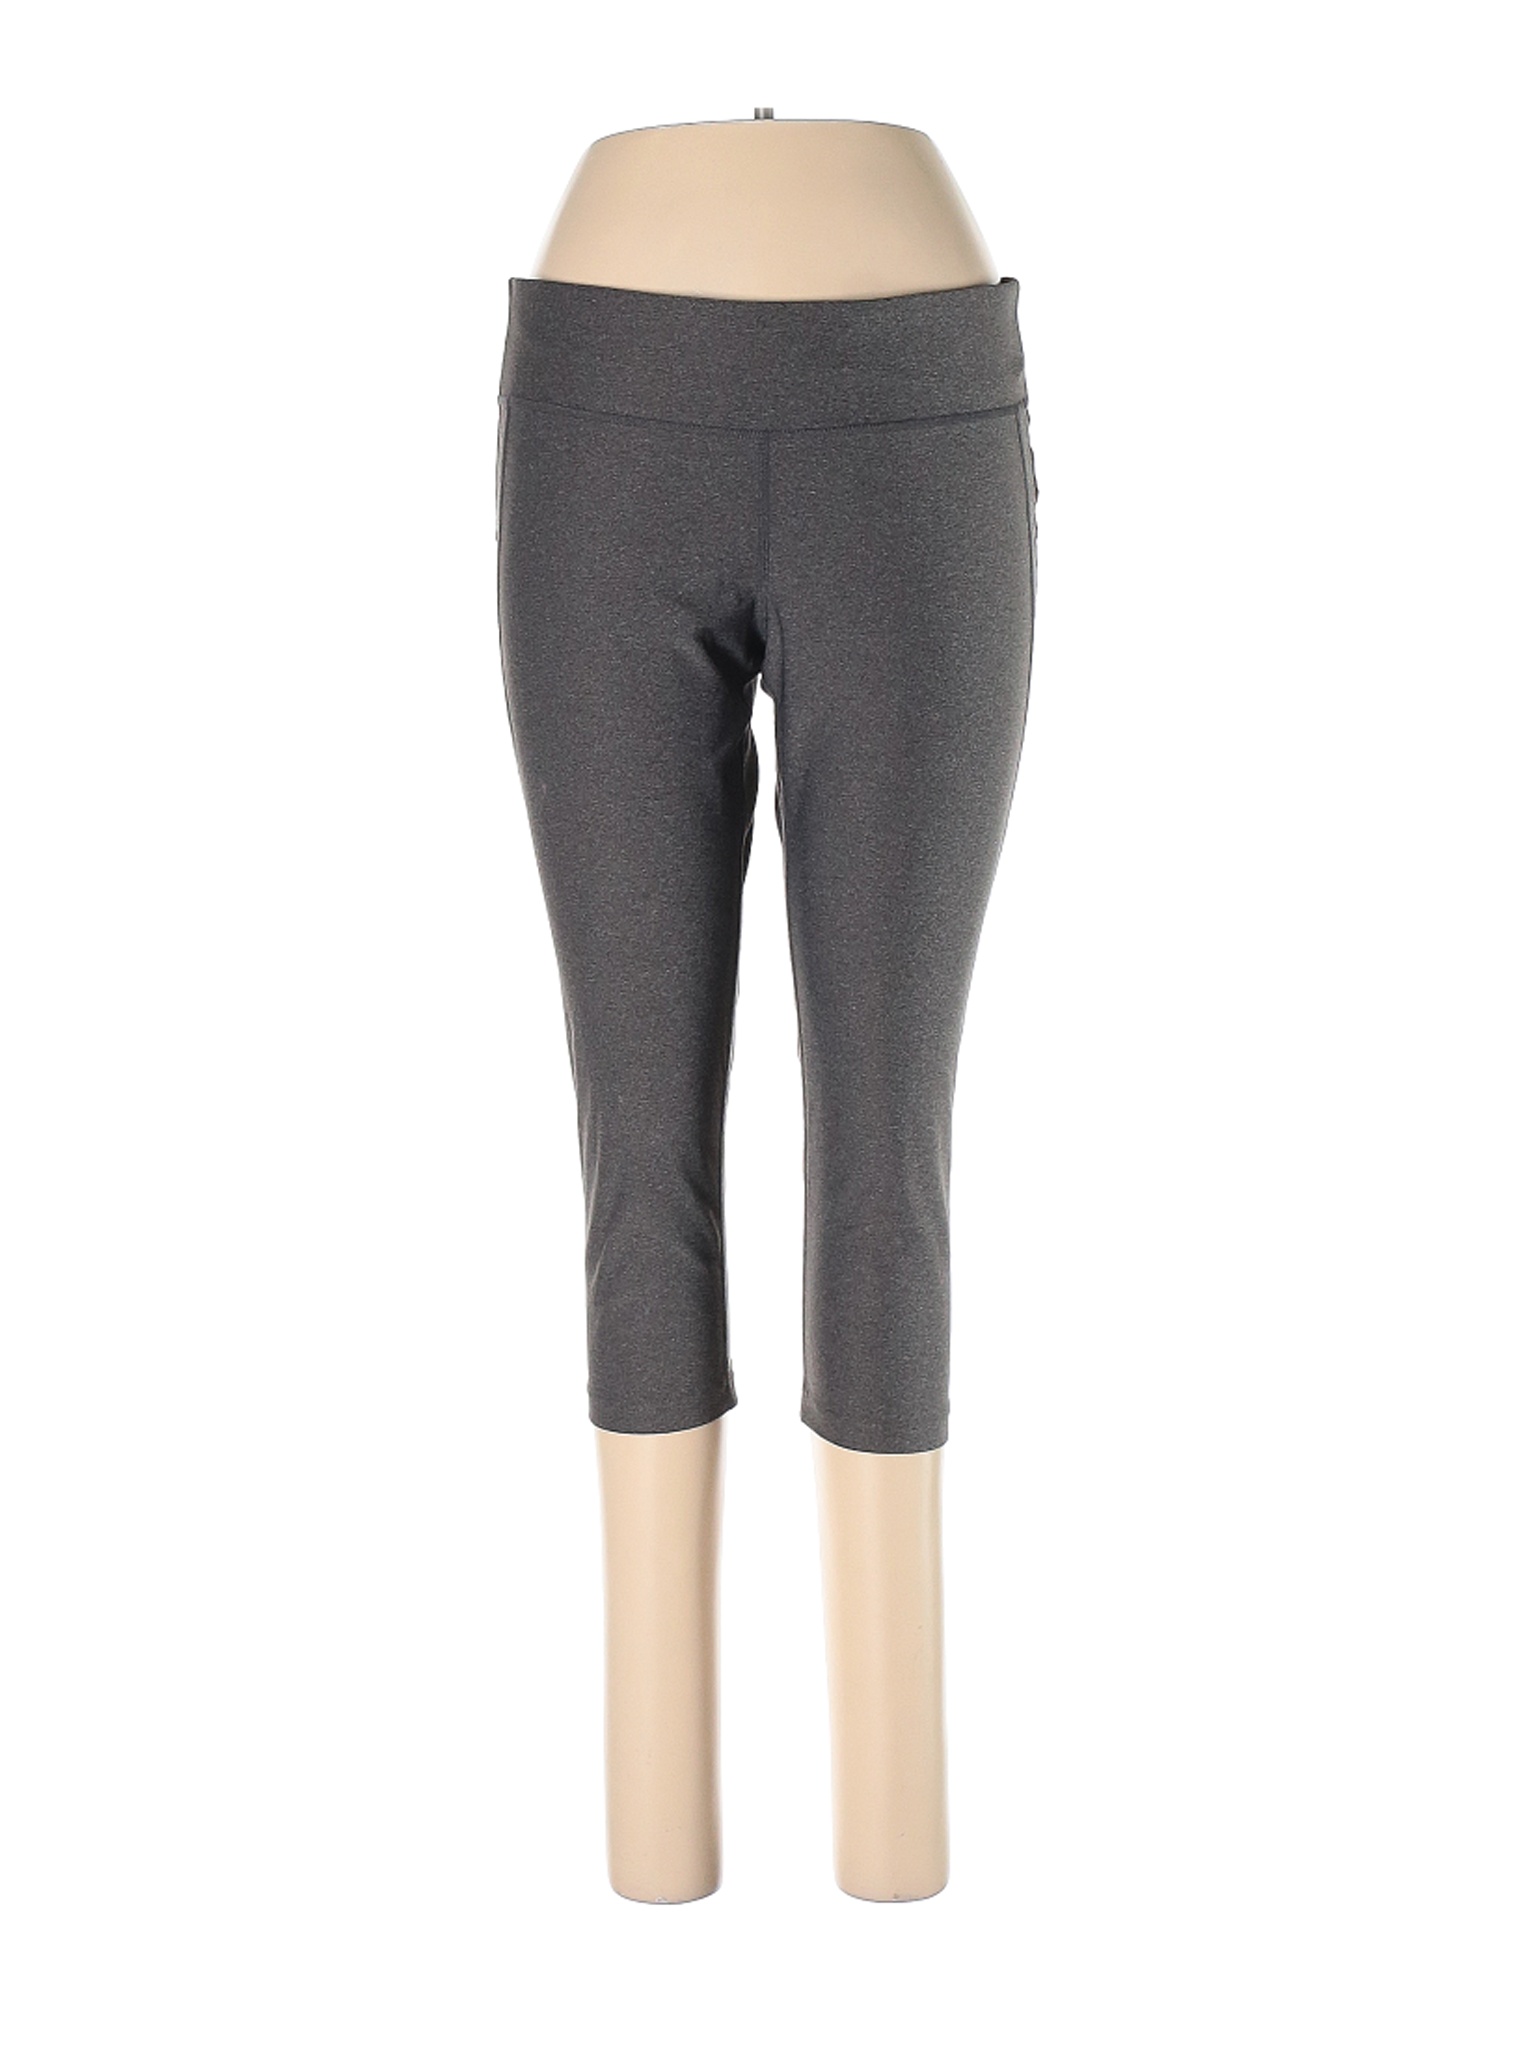 Xersion Women Gray Active Pants L | eBay